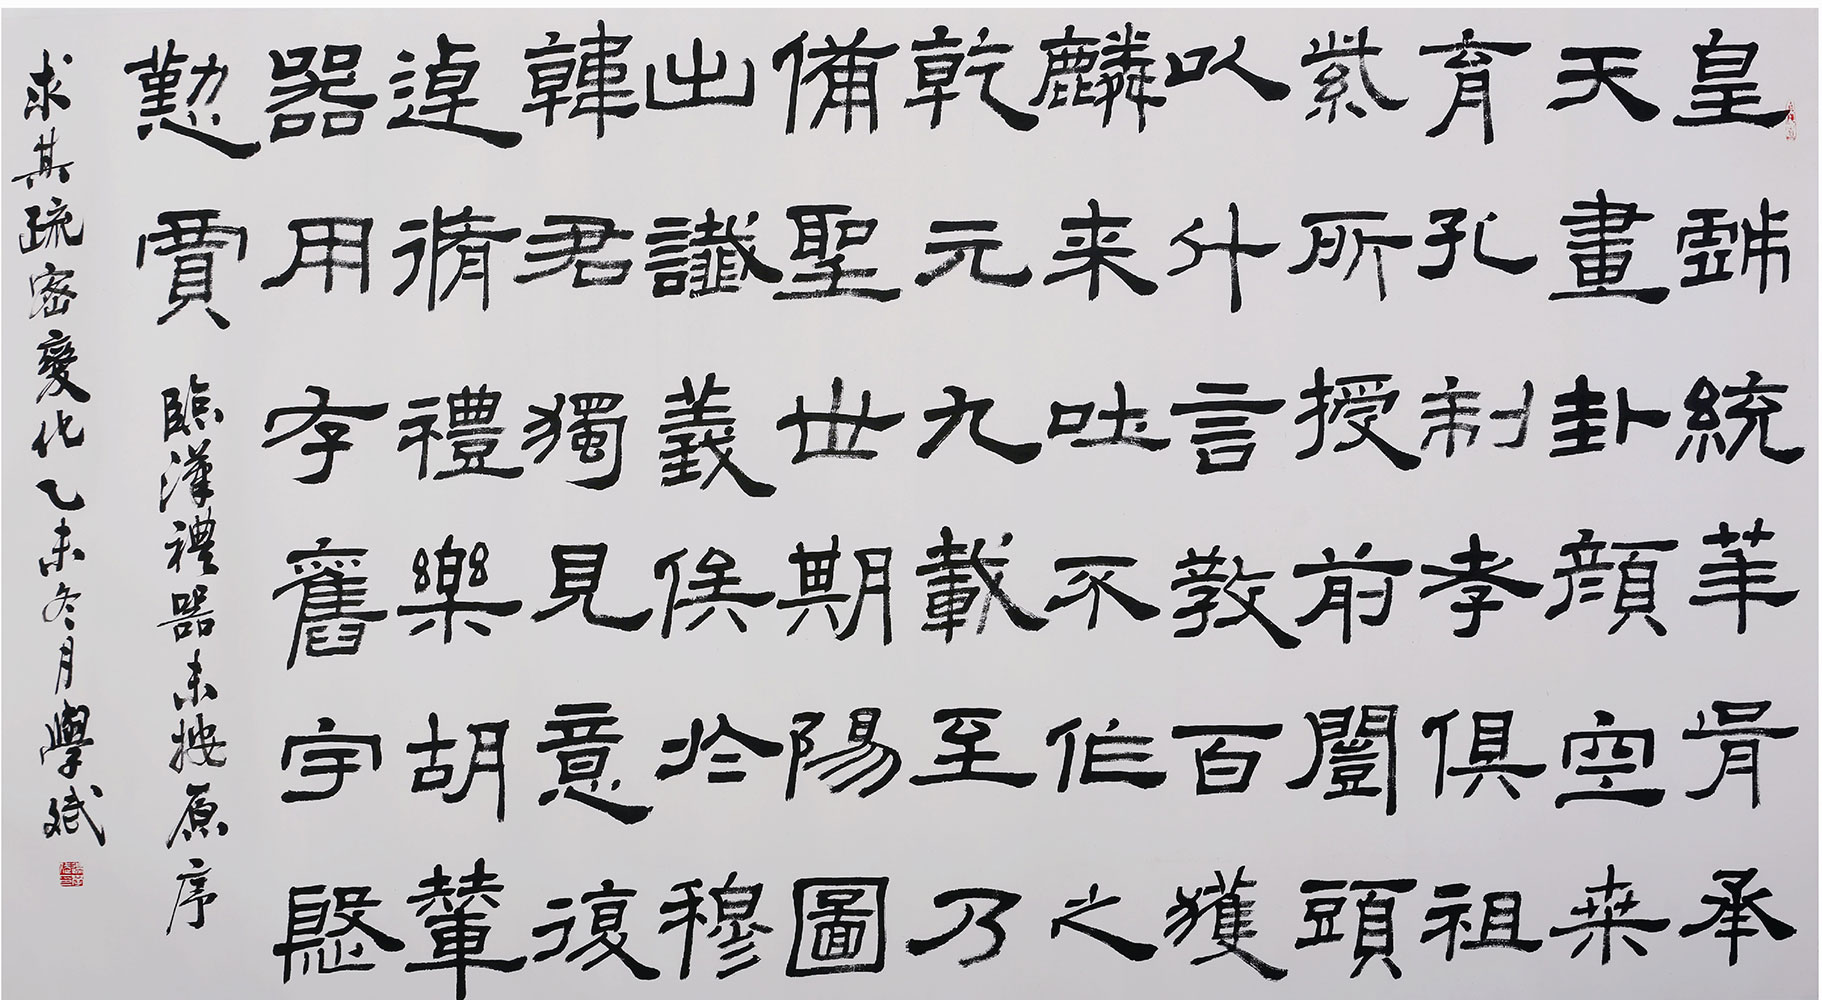 隶书横幅 临《汉礼器碑》 179cm×97cm 2015年